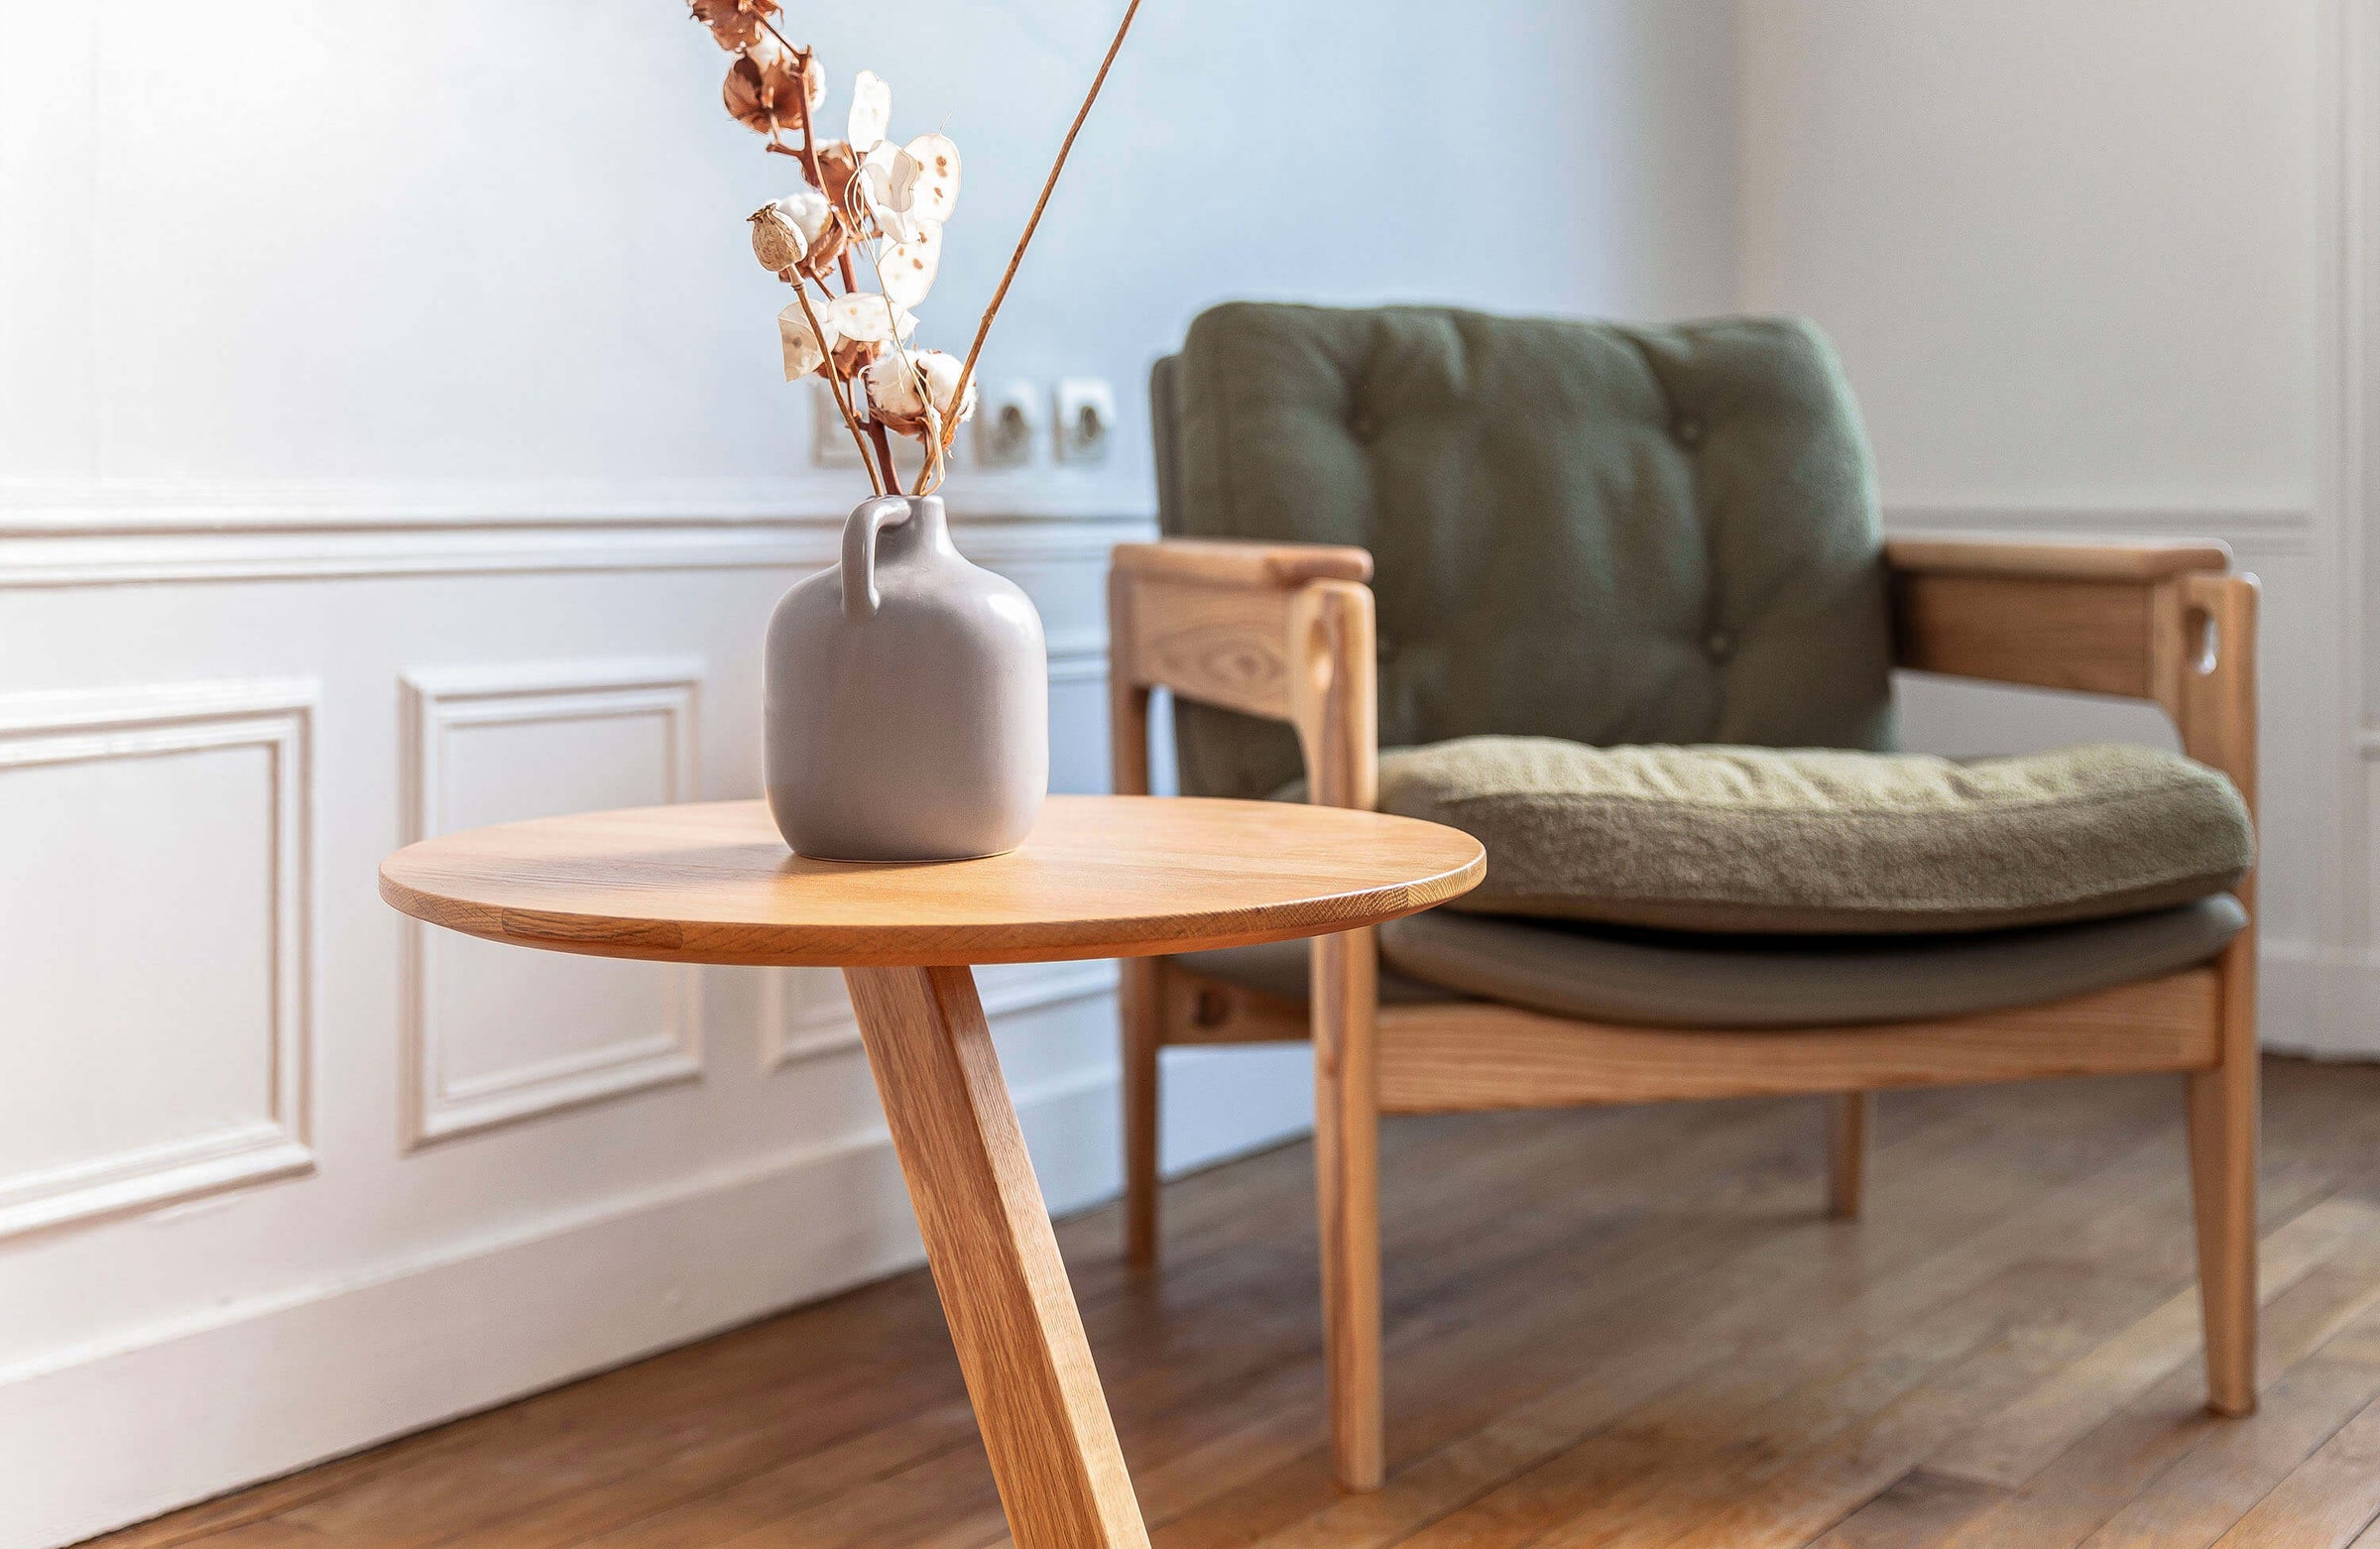 Fainko-paris-ile-de-france-fauteuil-yosi-table-d-appoint-meuble-design-bois-massif-chaise